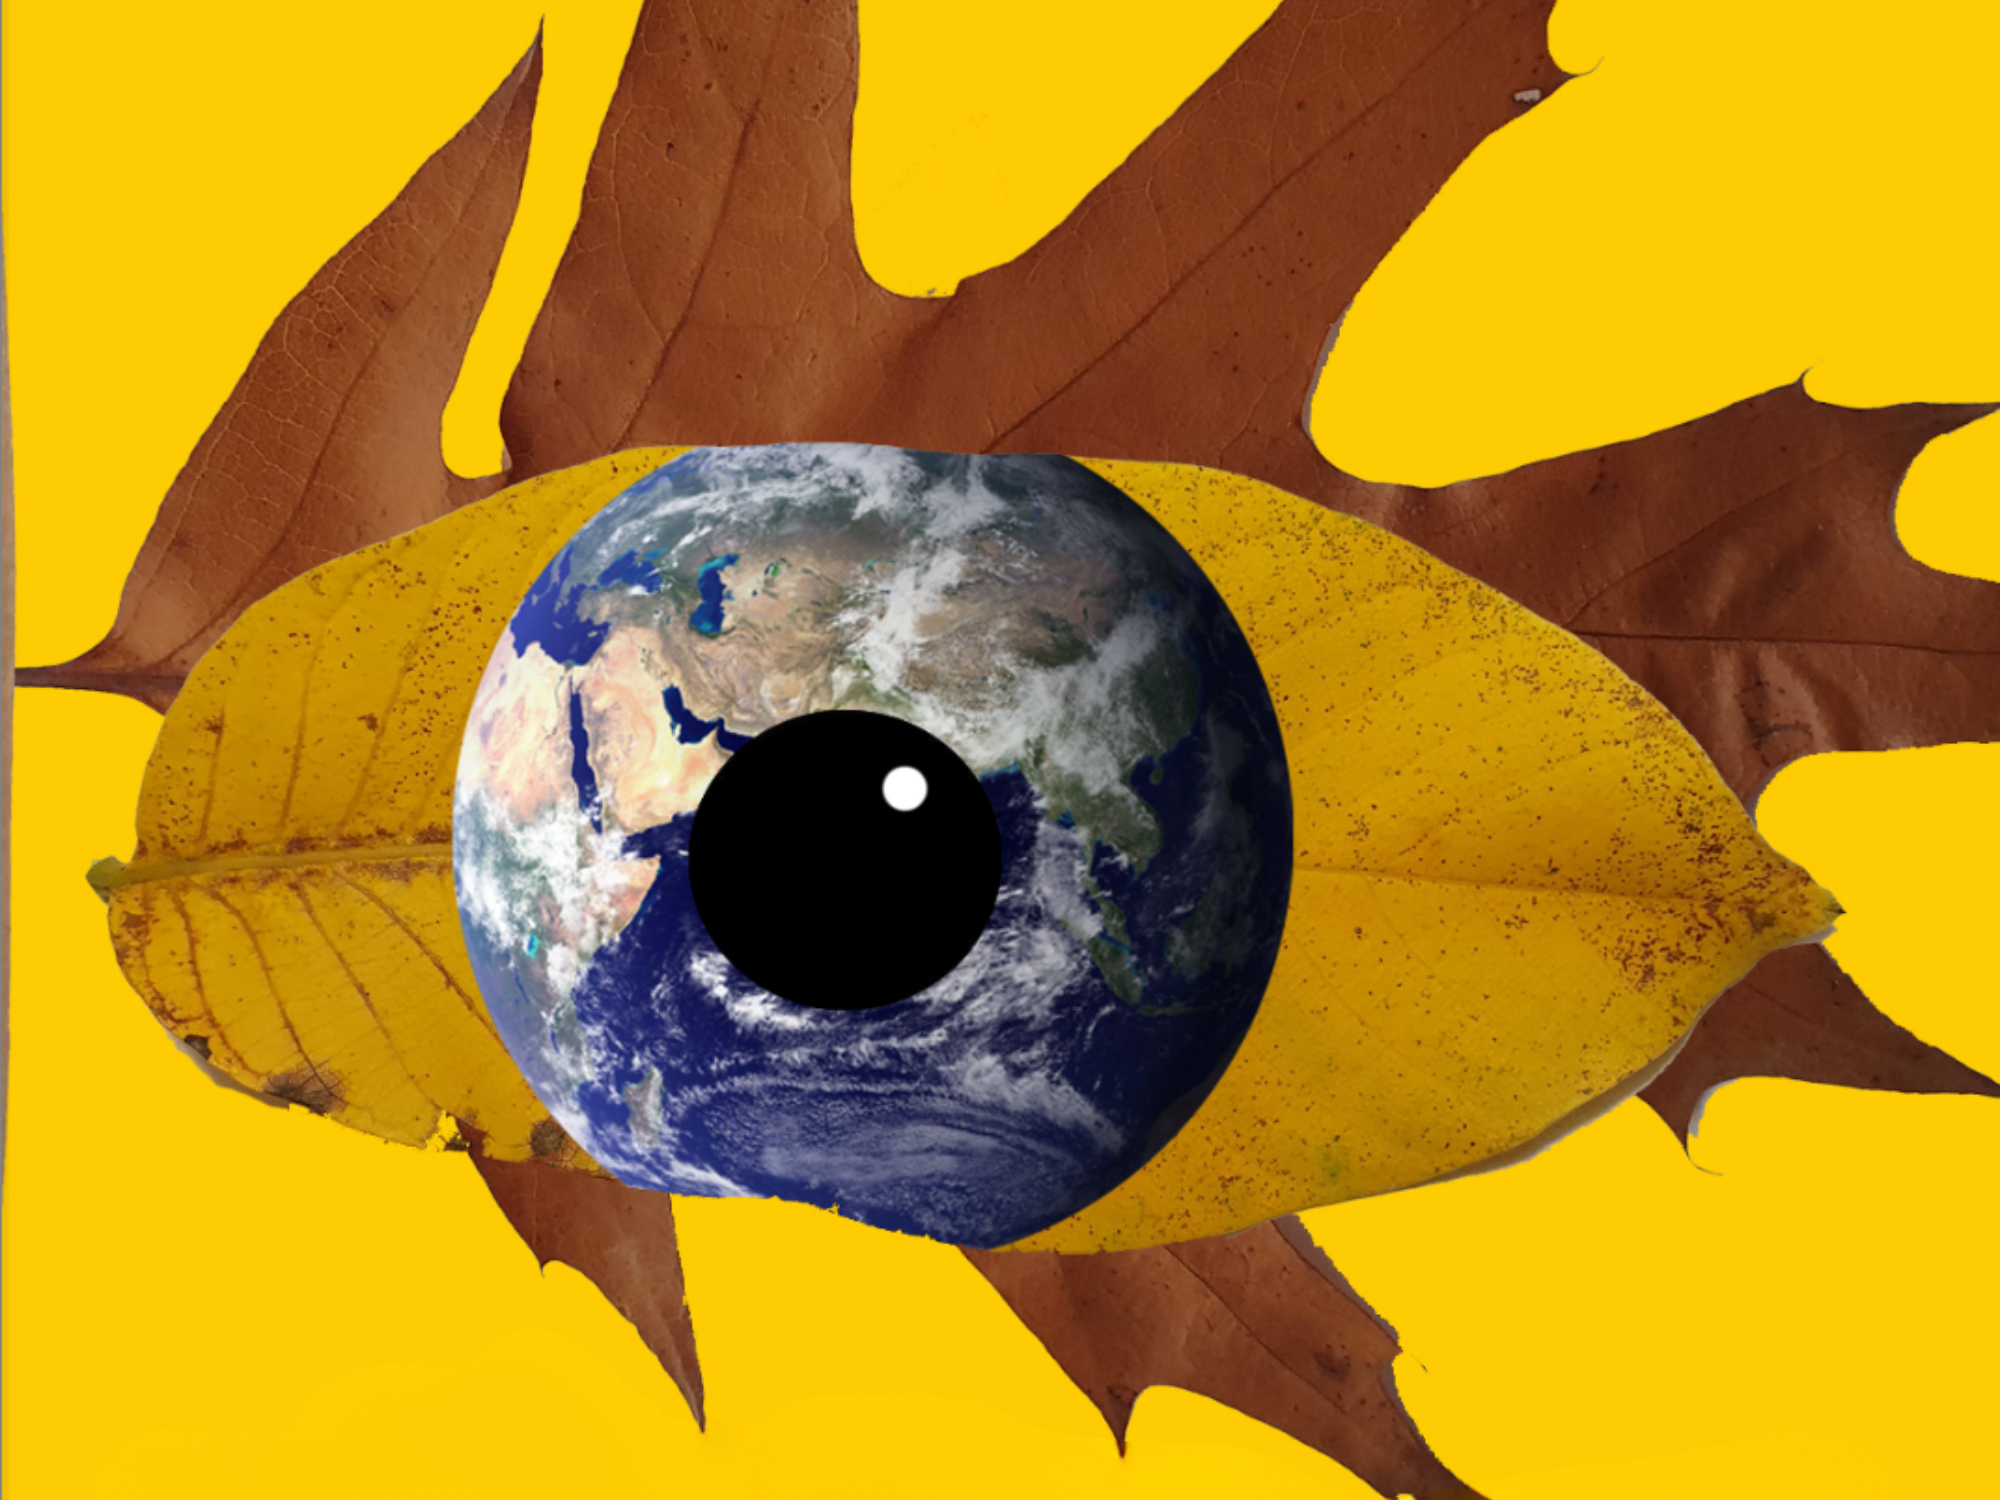 Die Erde als Auge auf zwei Blättern, Motiv des Kunstwettbewerbs